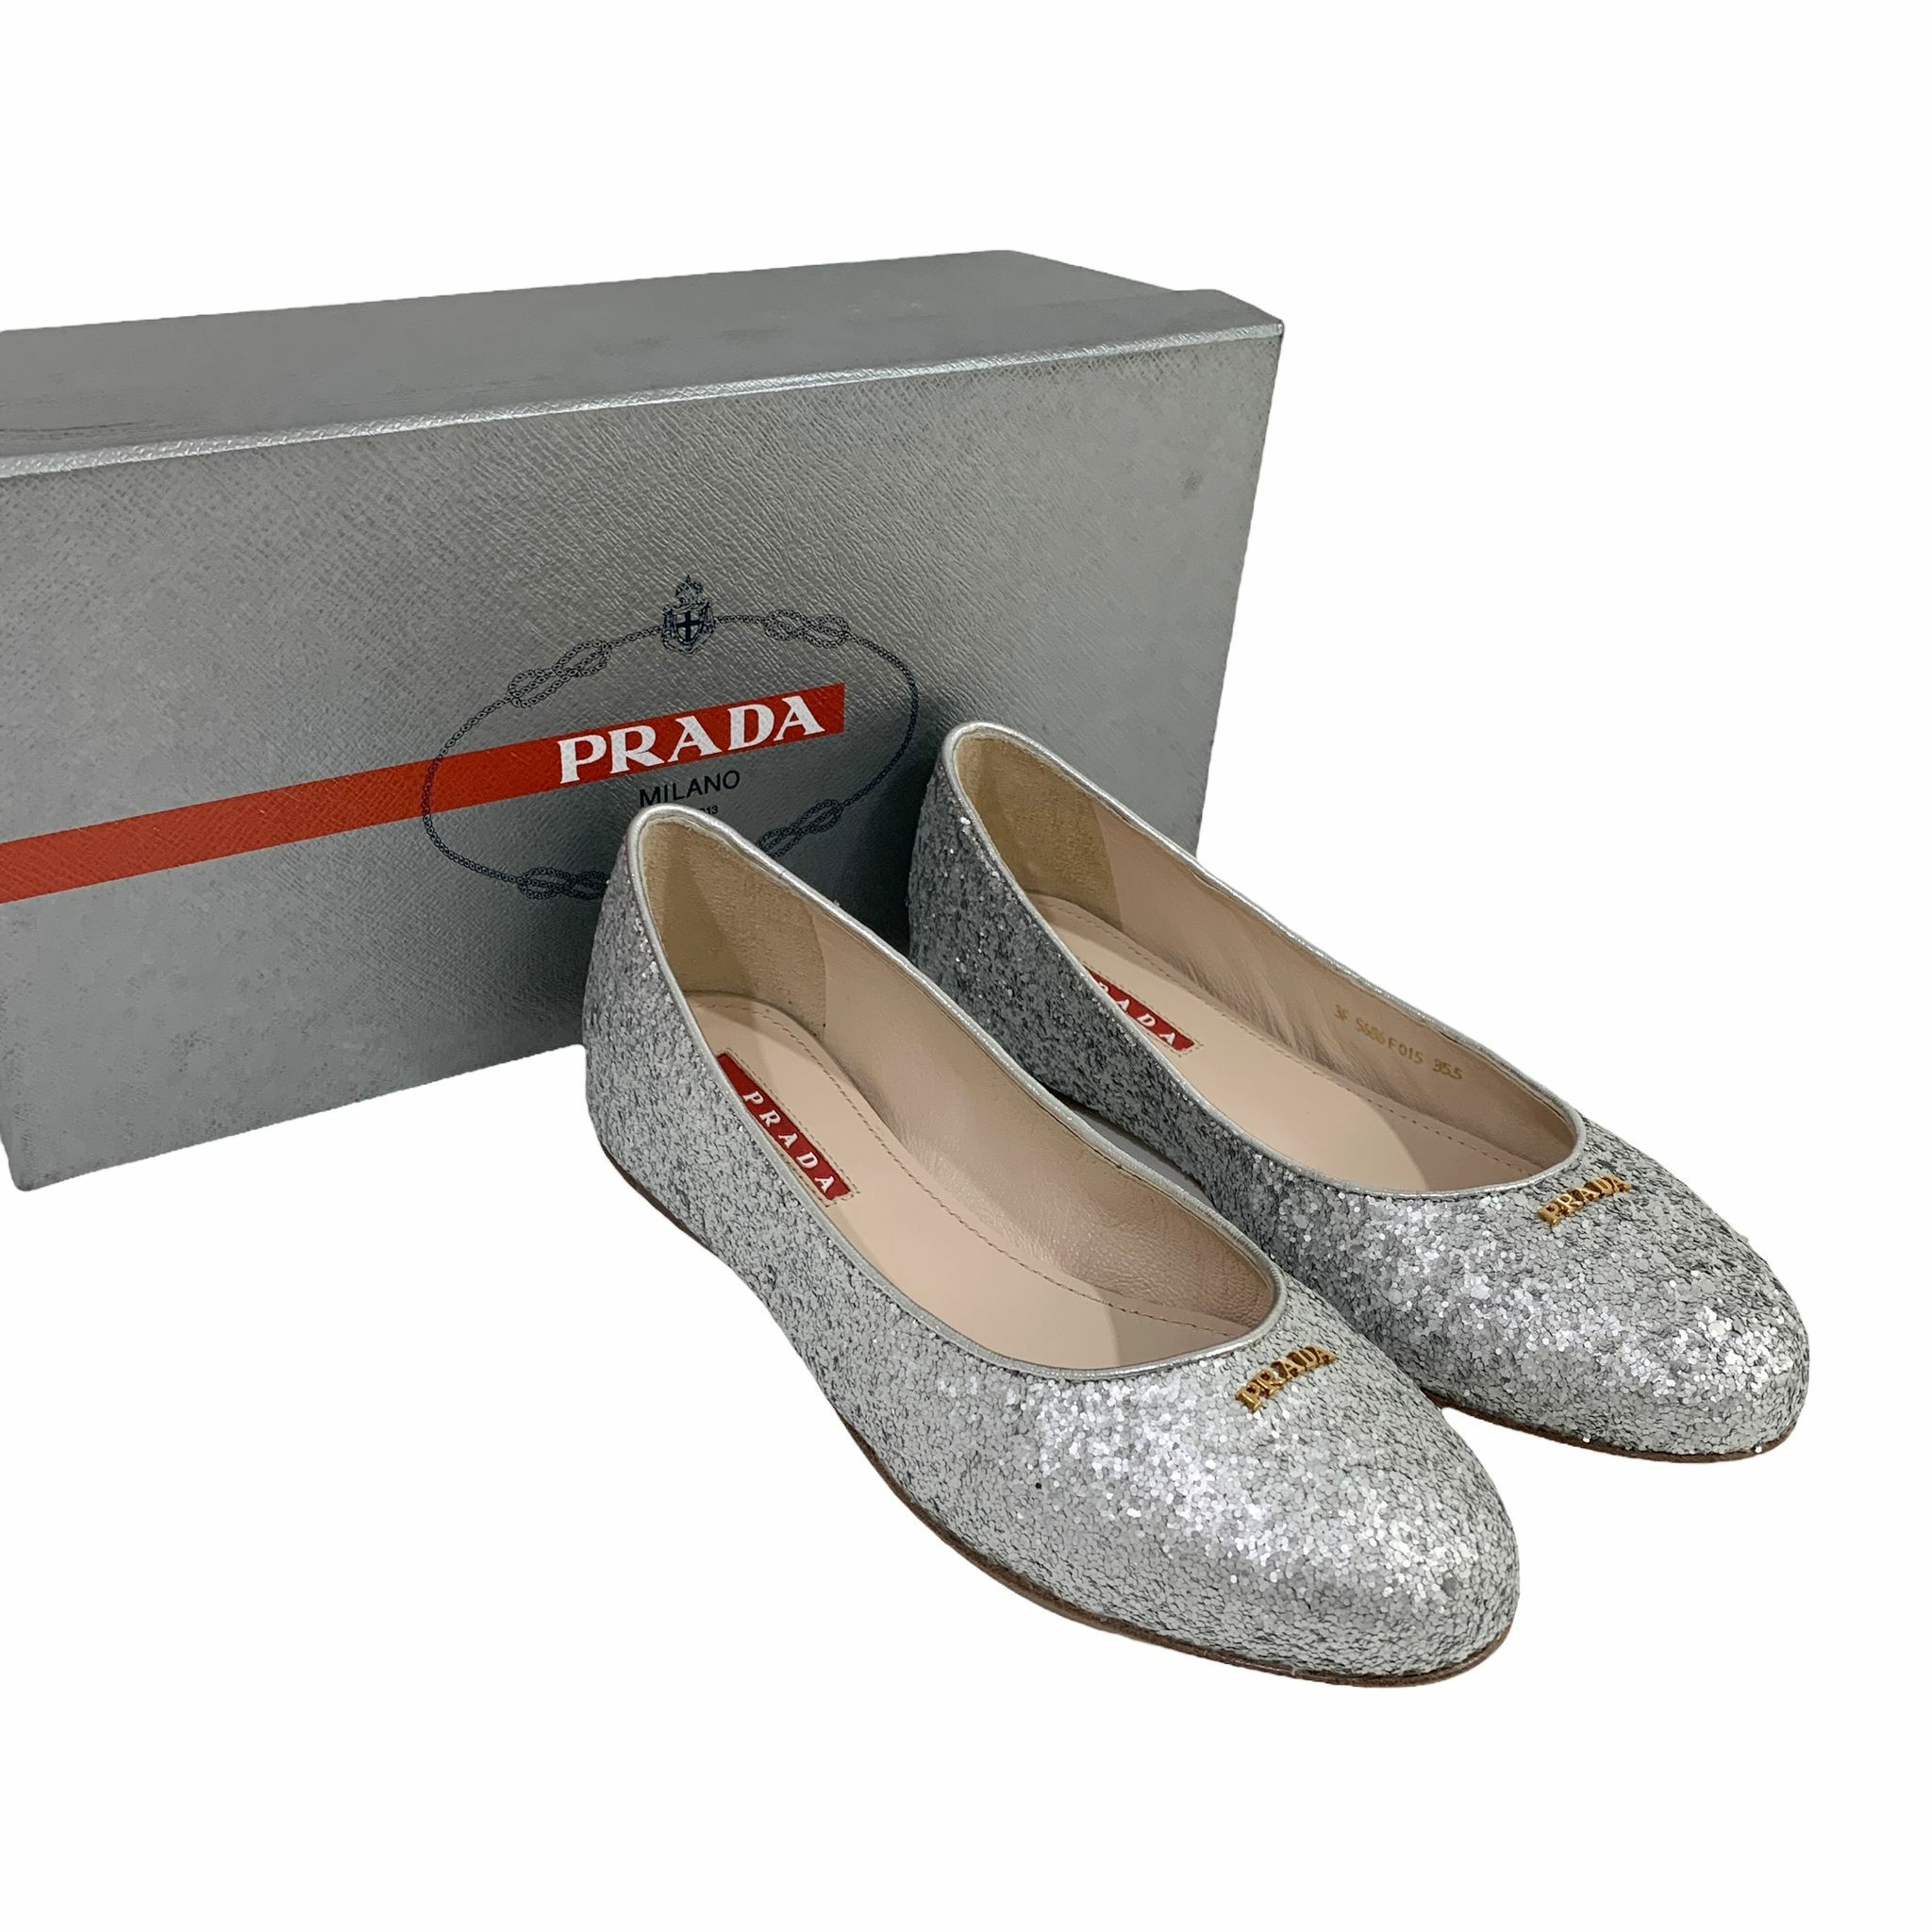 全新PRADA平底鞋35.5碼銀色珠片3F5686 #BRAND NEW #香榭站正品